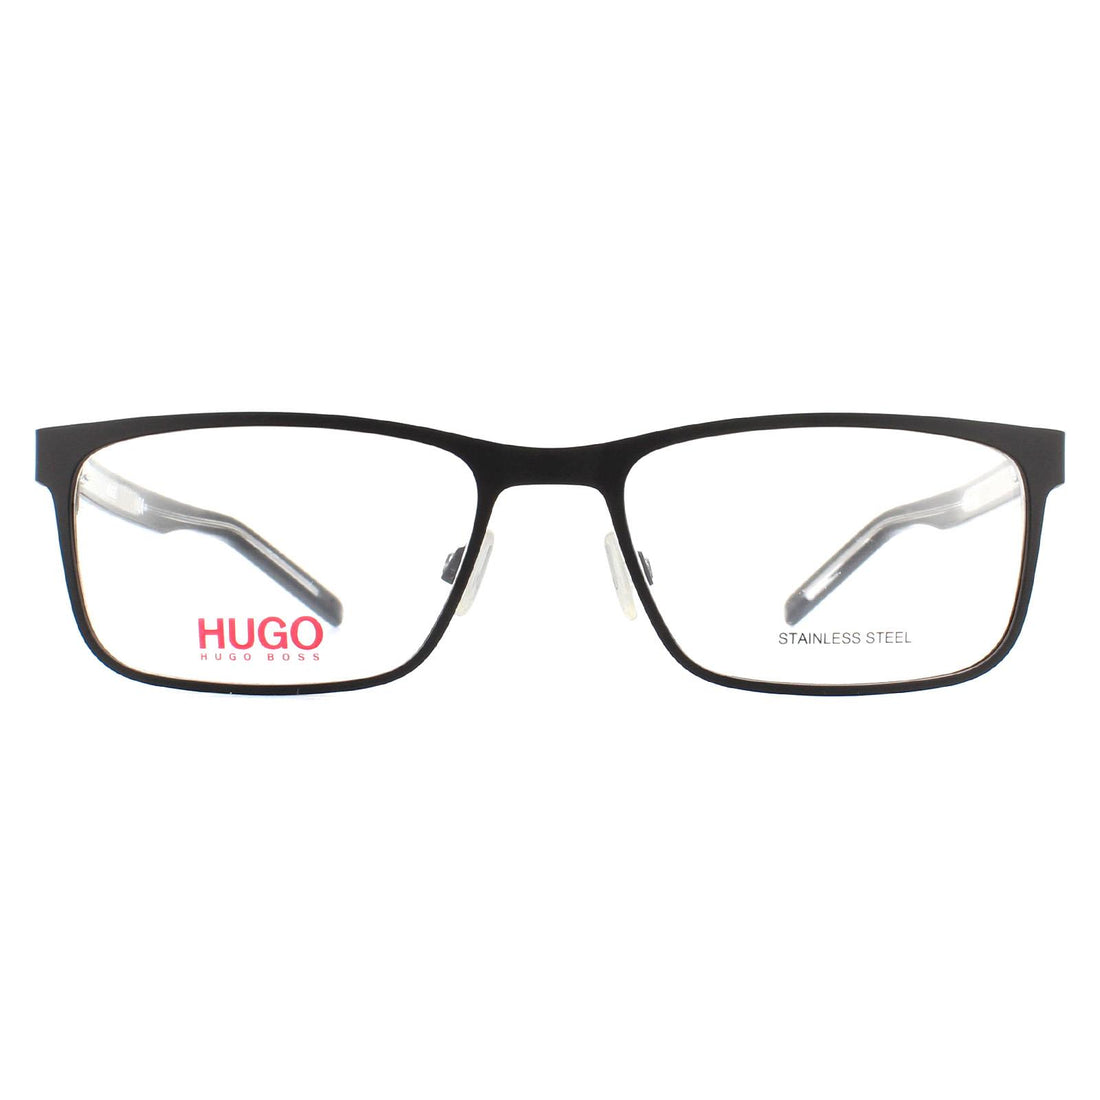 Hugo By Hugo Boss Glasses Frames HG 1005 N7I Matte Black and Black Crystal